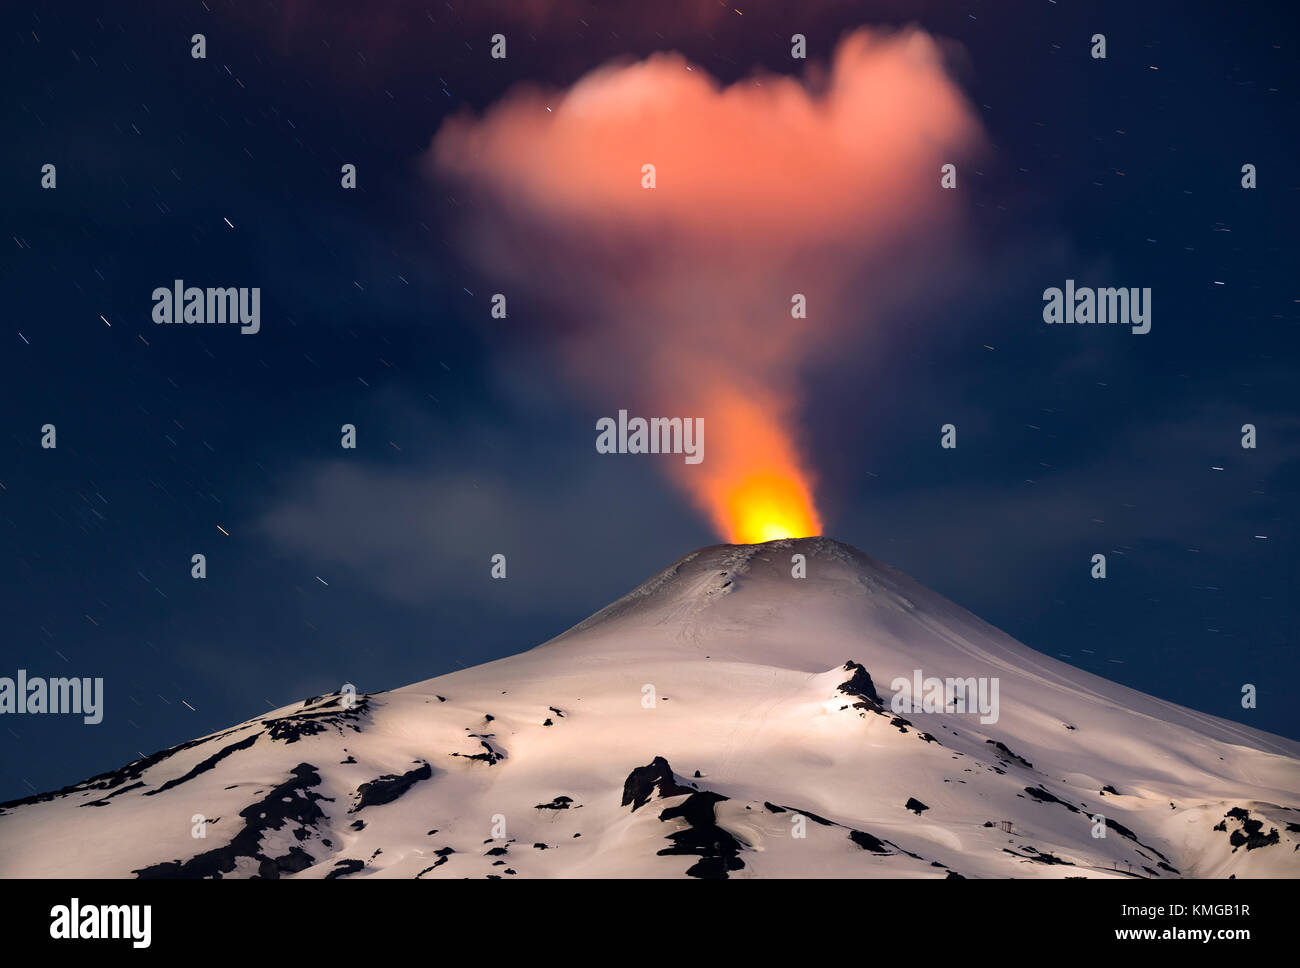 Volcán Villarrica / Villarrica volcano. El volcán Villarrica es uno de los volcanes más peligrosos de Chile, se encuentra en la región de la Araucania. Stock Photo